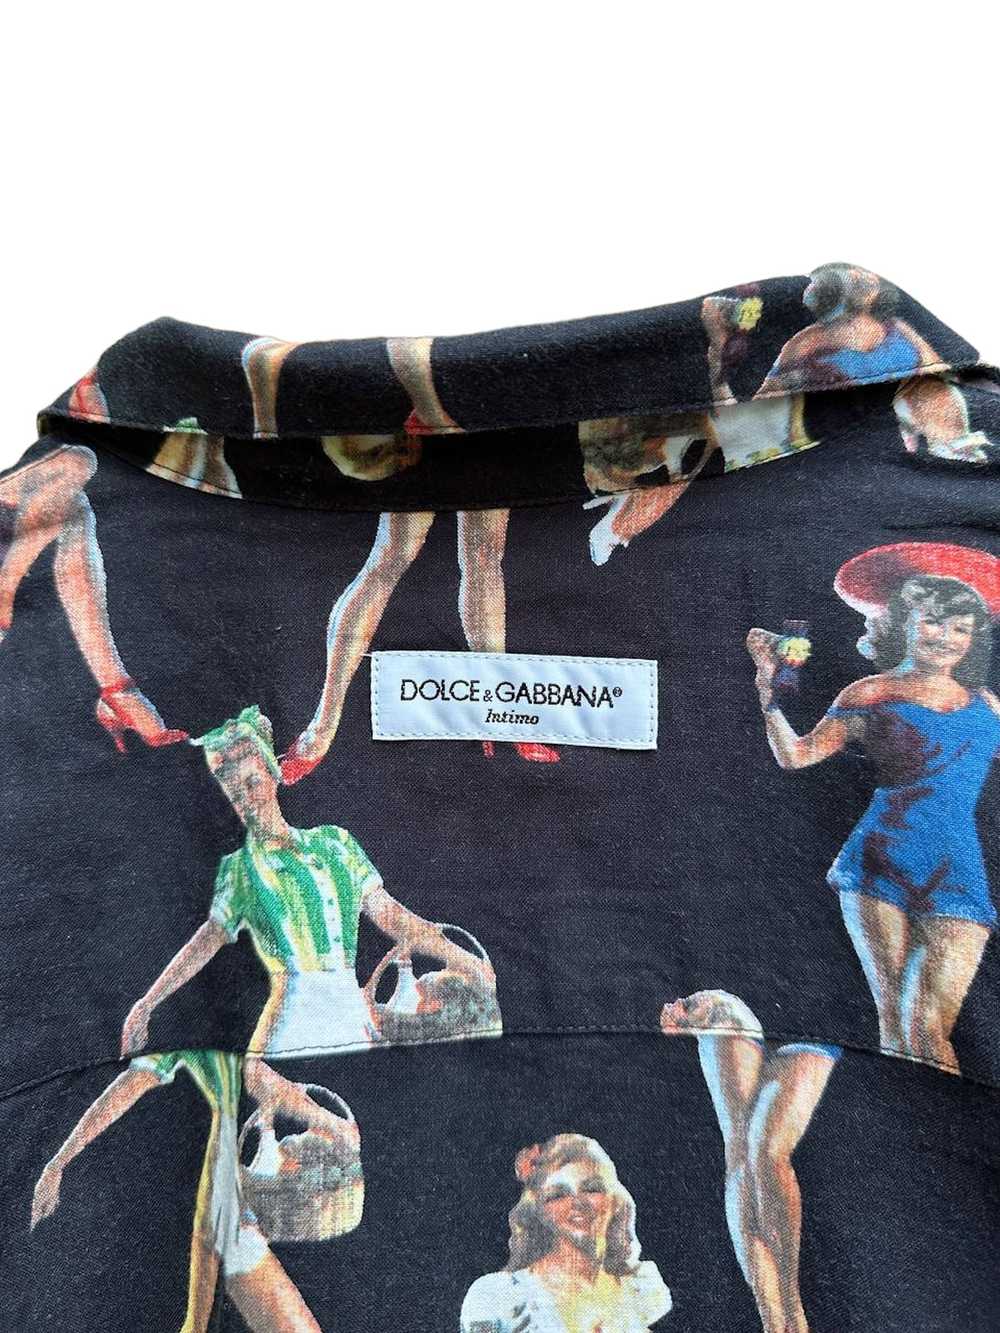 Dolce & Gabbana Dolce & Gabbana - Intimo Shirt wi… - image 7